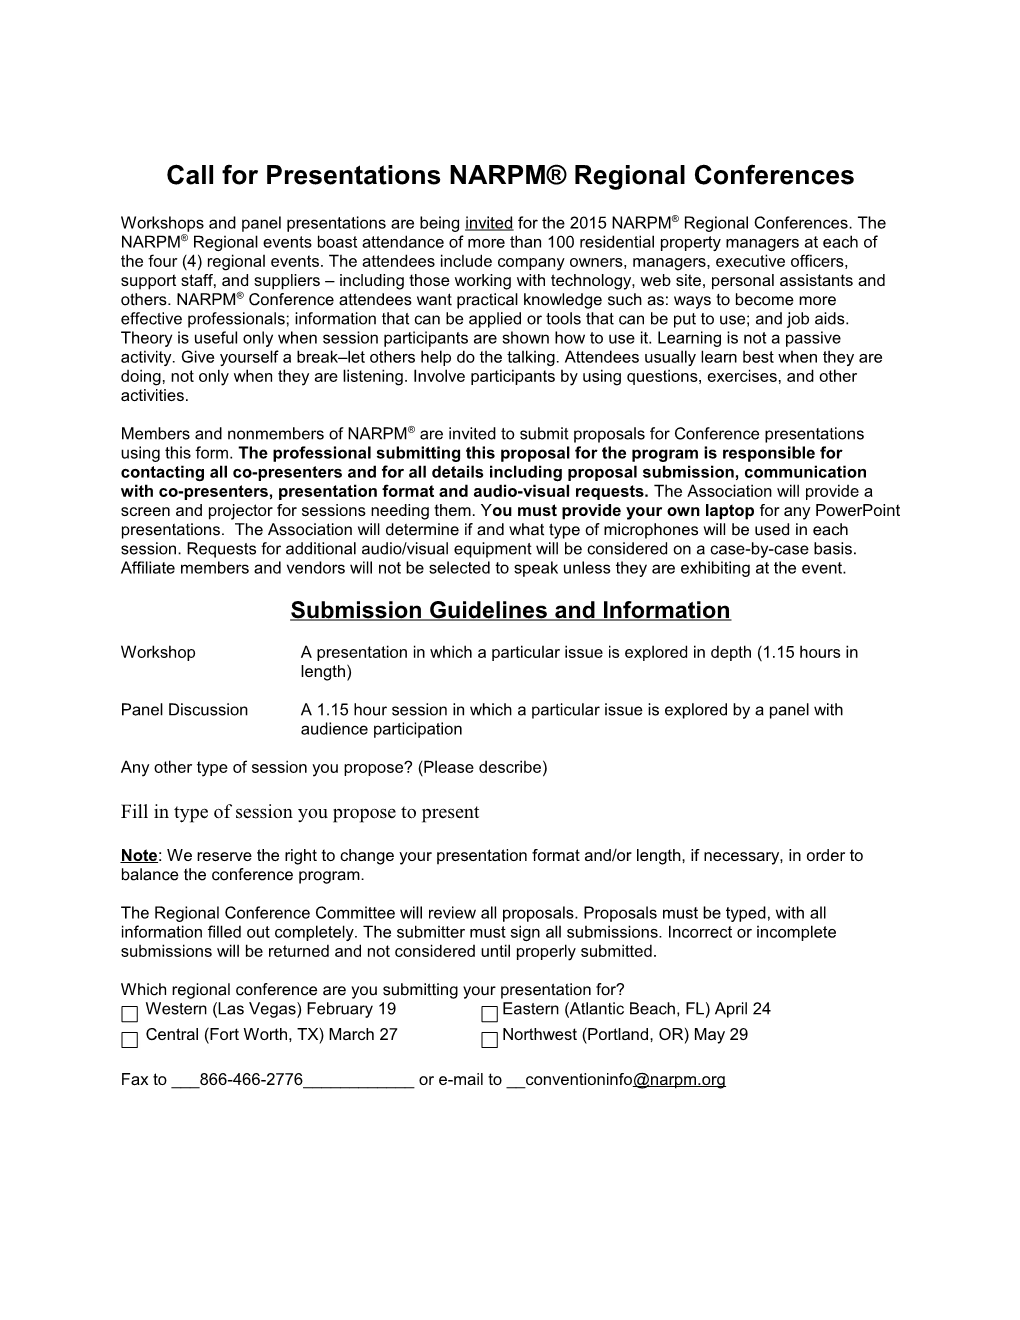 Call for Presentations NARPM Regional Conferences